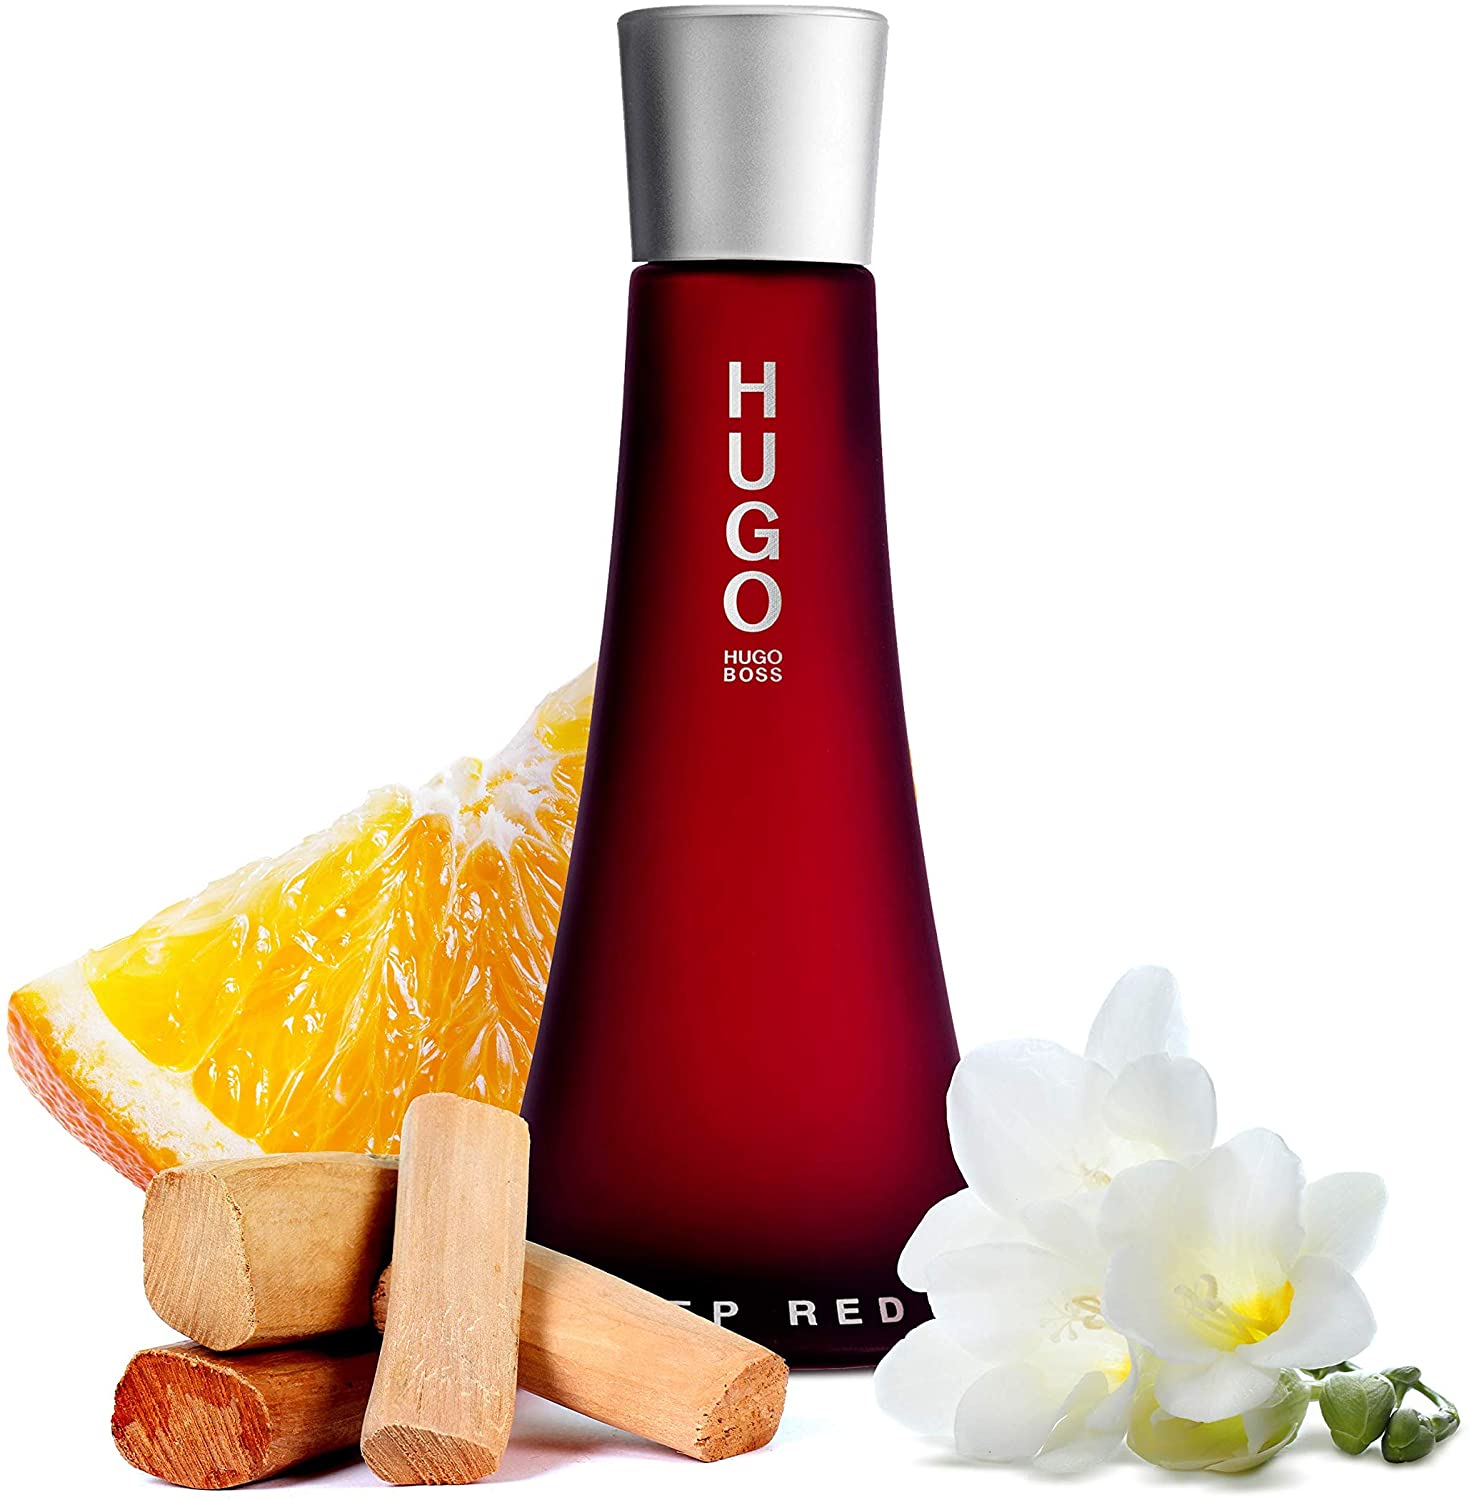 Hugo Boss Deep Red Eau De Parfum for Women, 90 ml - Buy Online at Best  Price in UAE - Qonooz